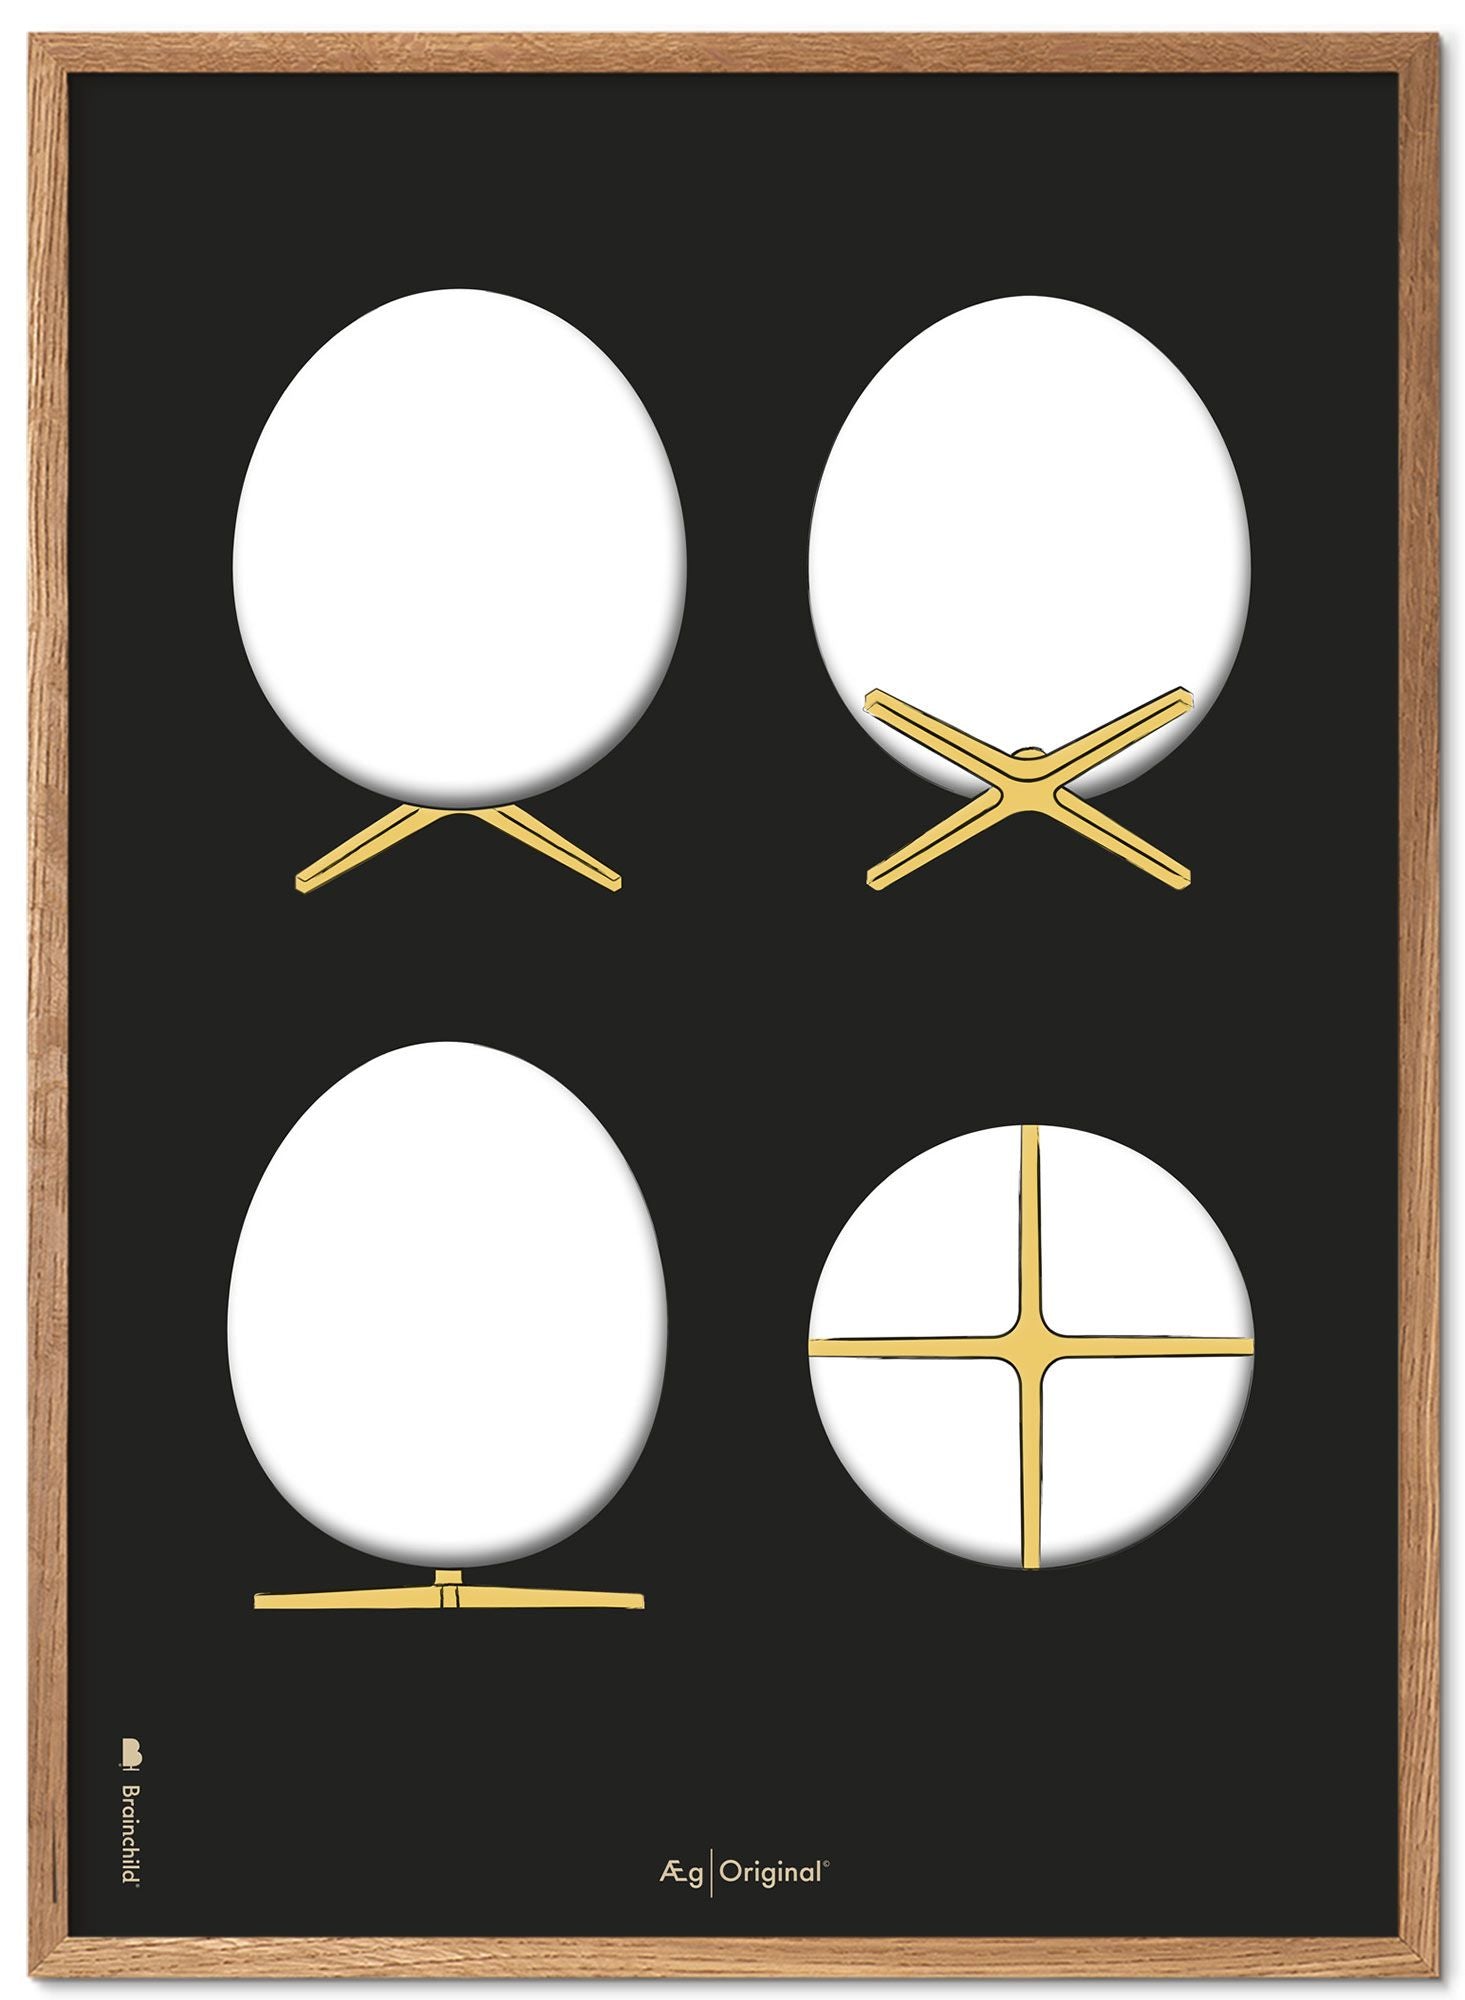 Prepare el marco de póster de bocetos de diseño de huevo hecho de madera clara de 30x40 cm, fondo negro